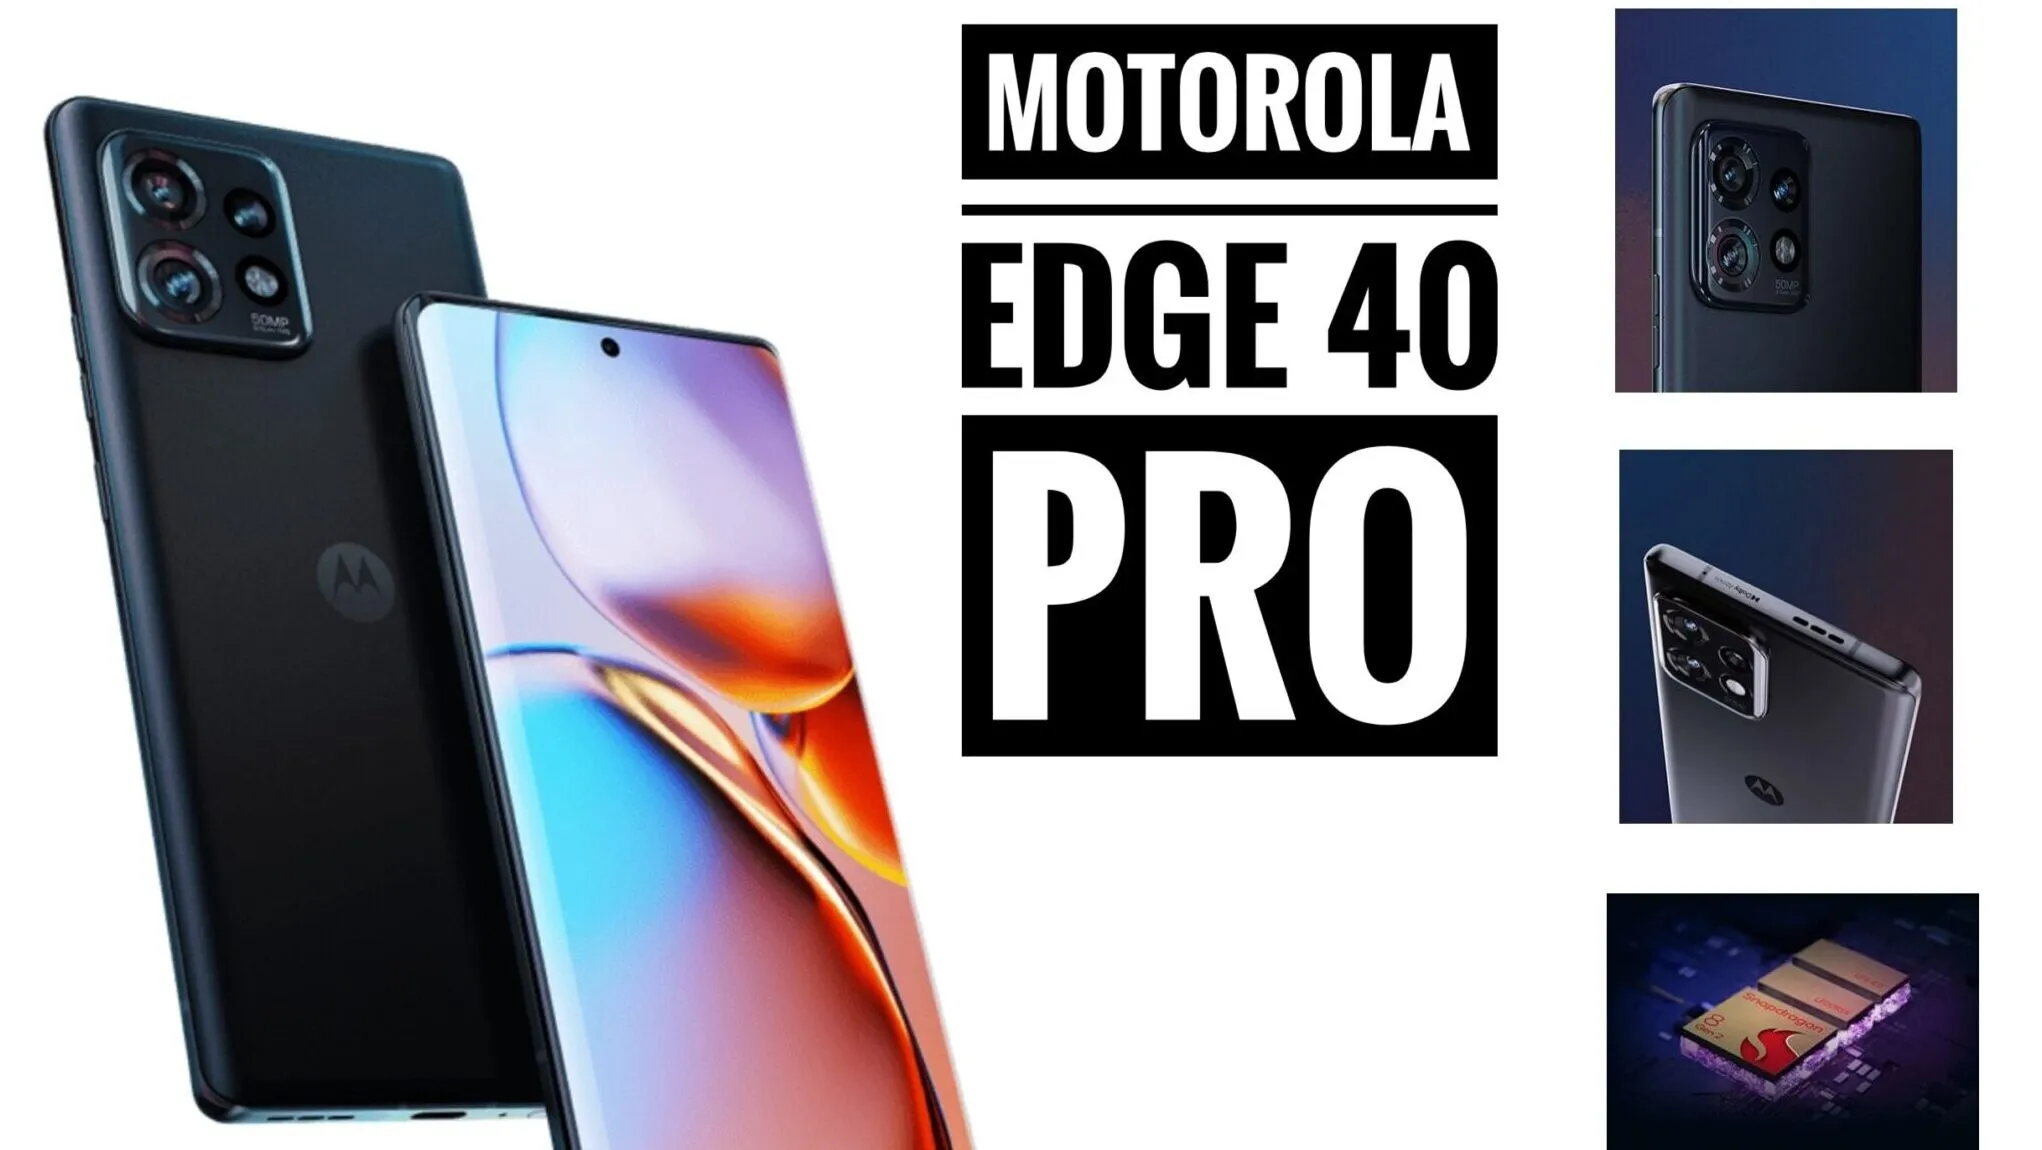 Motorola Edge 40 Pro Specs, Launch Date, and Price